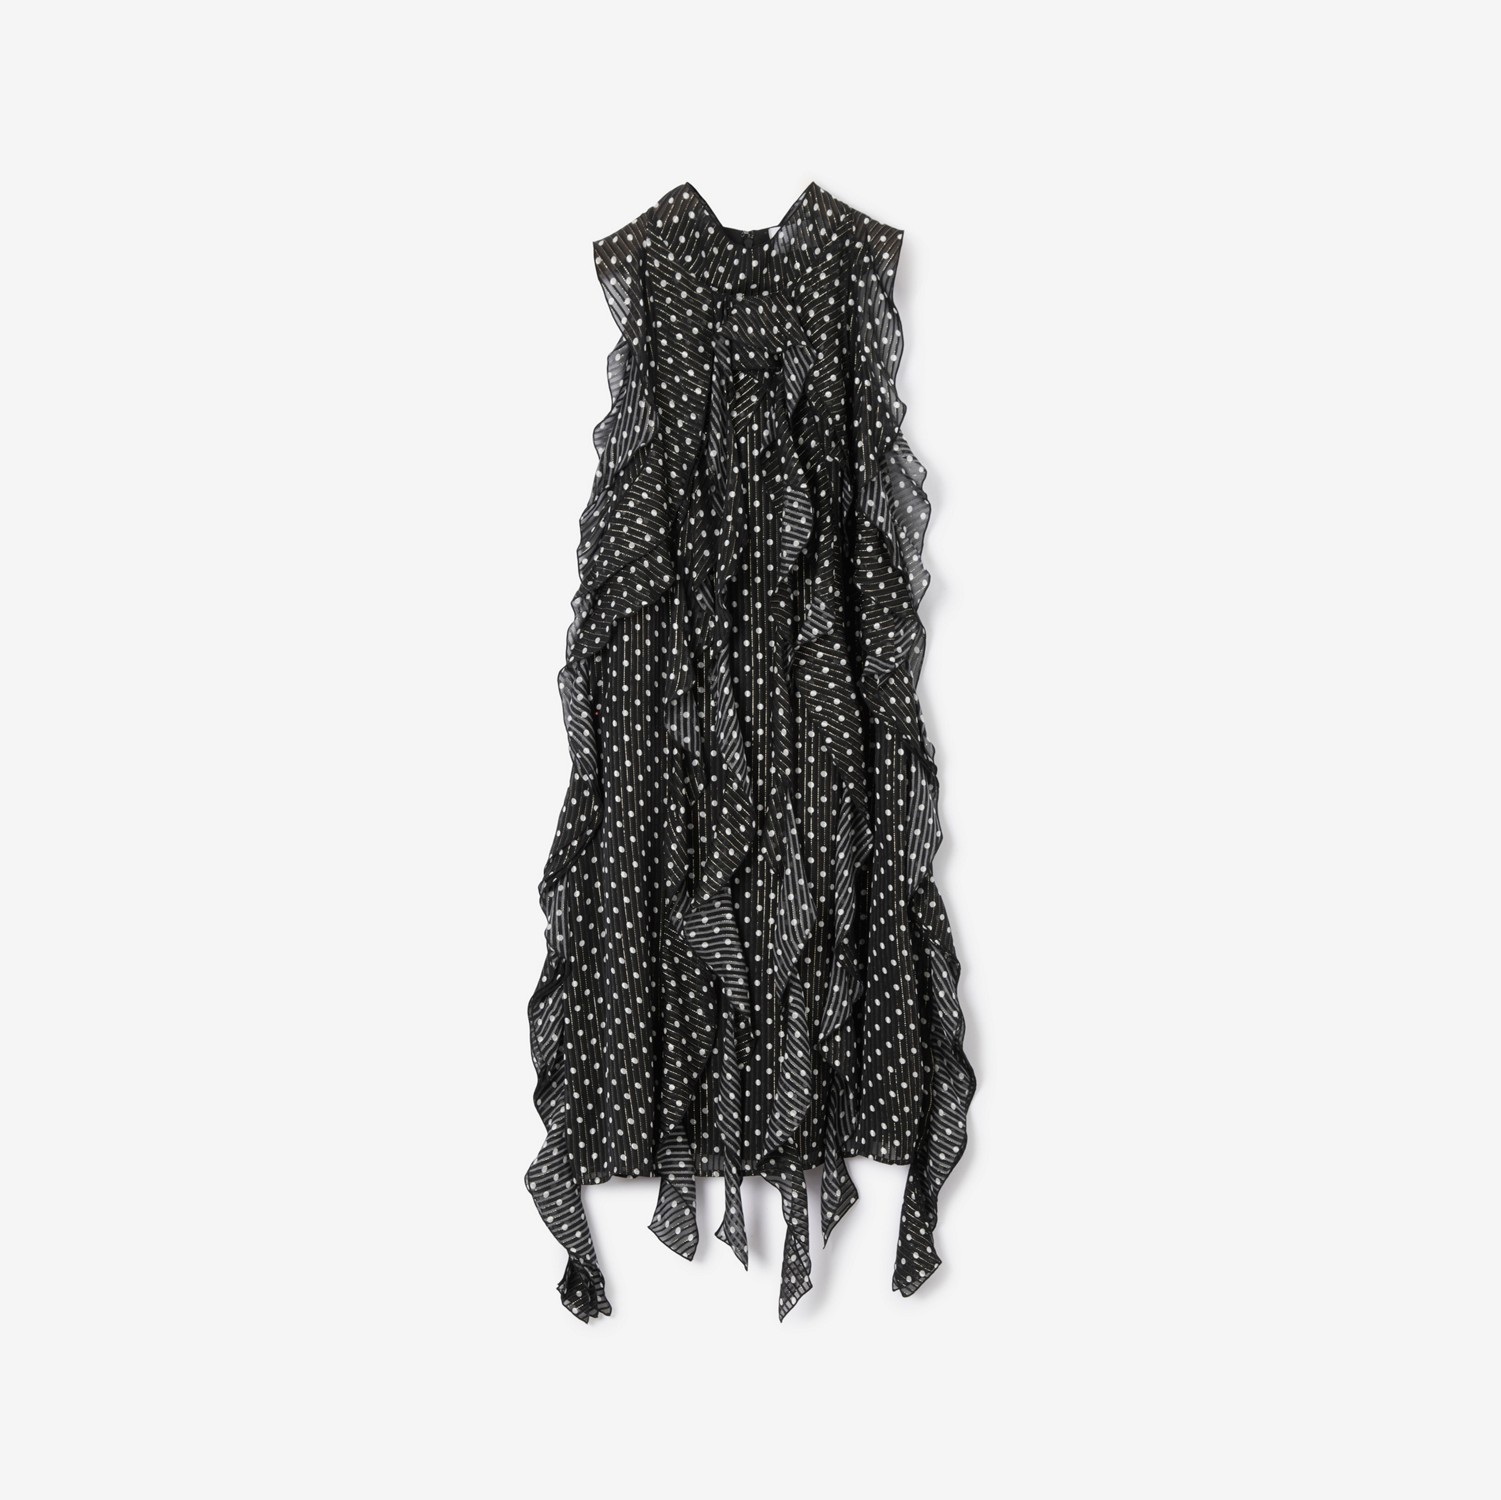 Vestido de chifon de seda em estampa de poá com detalhes franzidos (Preto) - Mulheres | Burberry® oficial